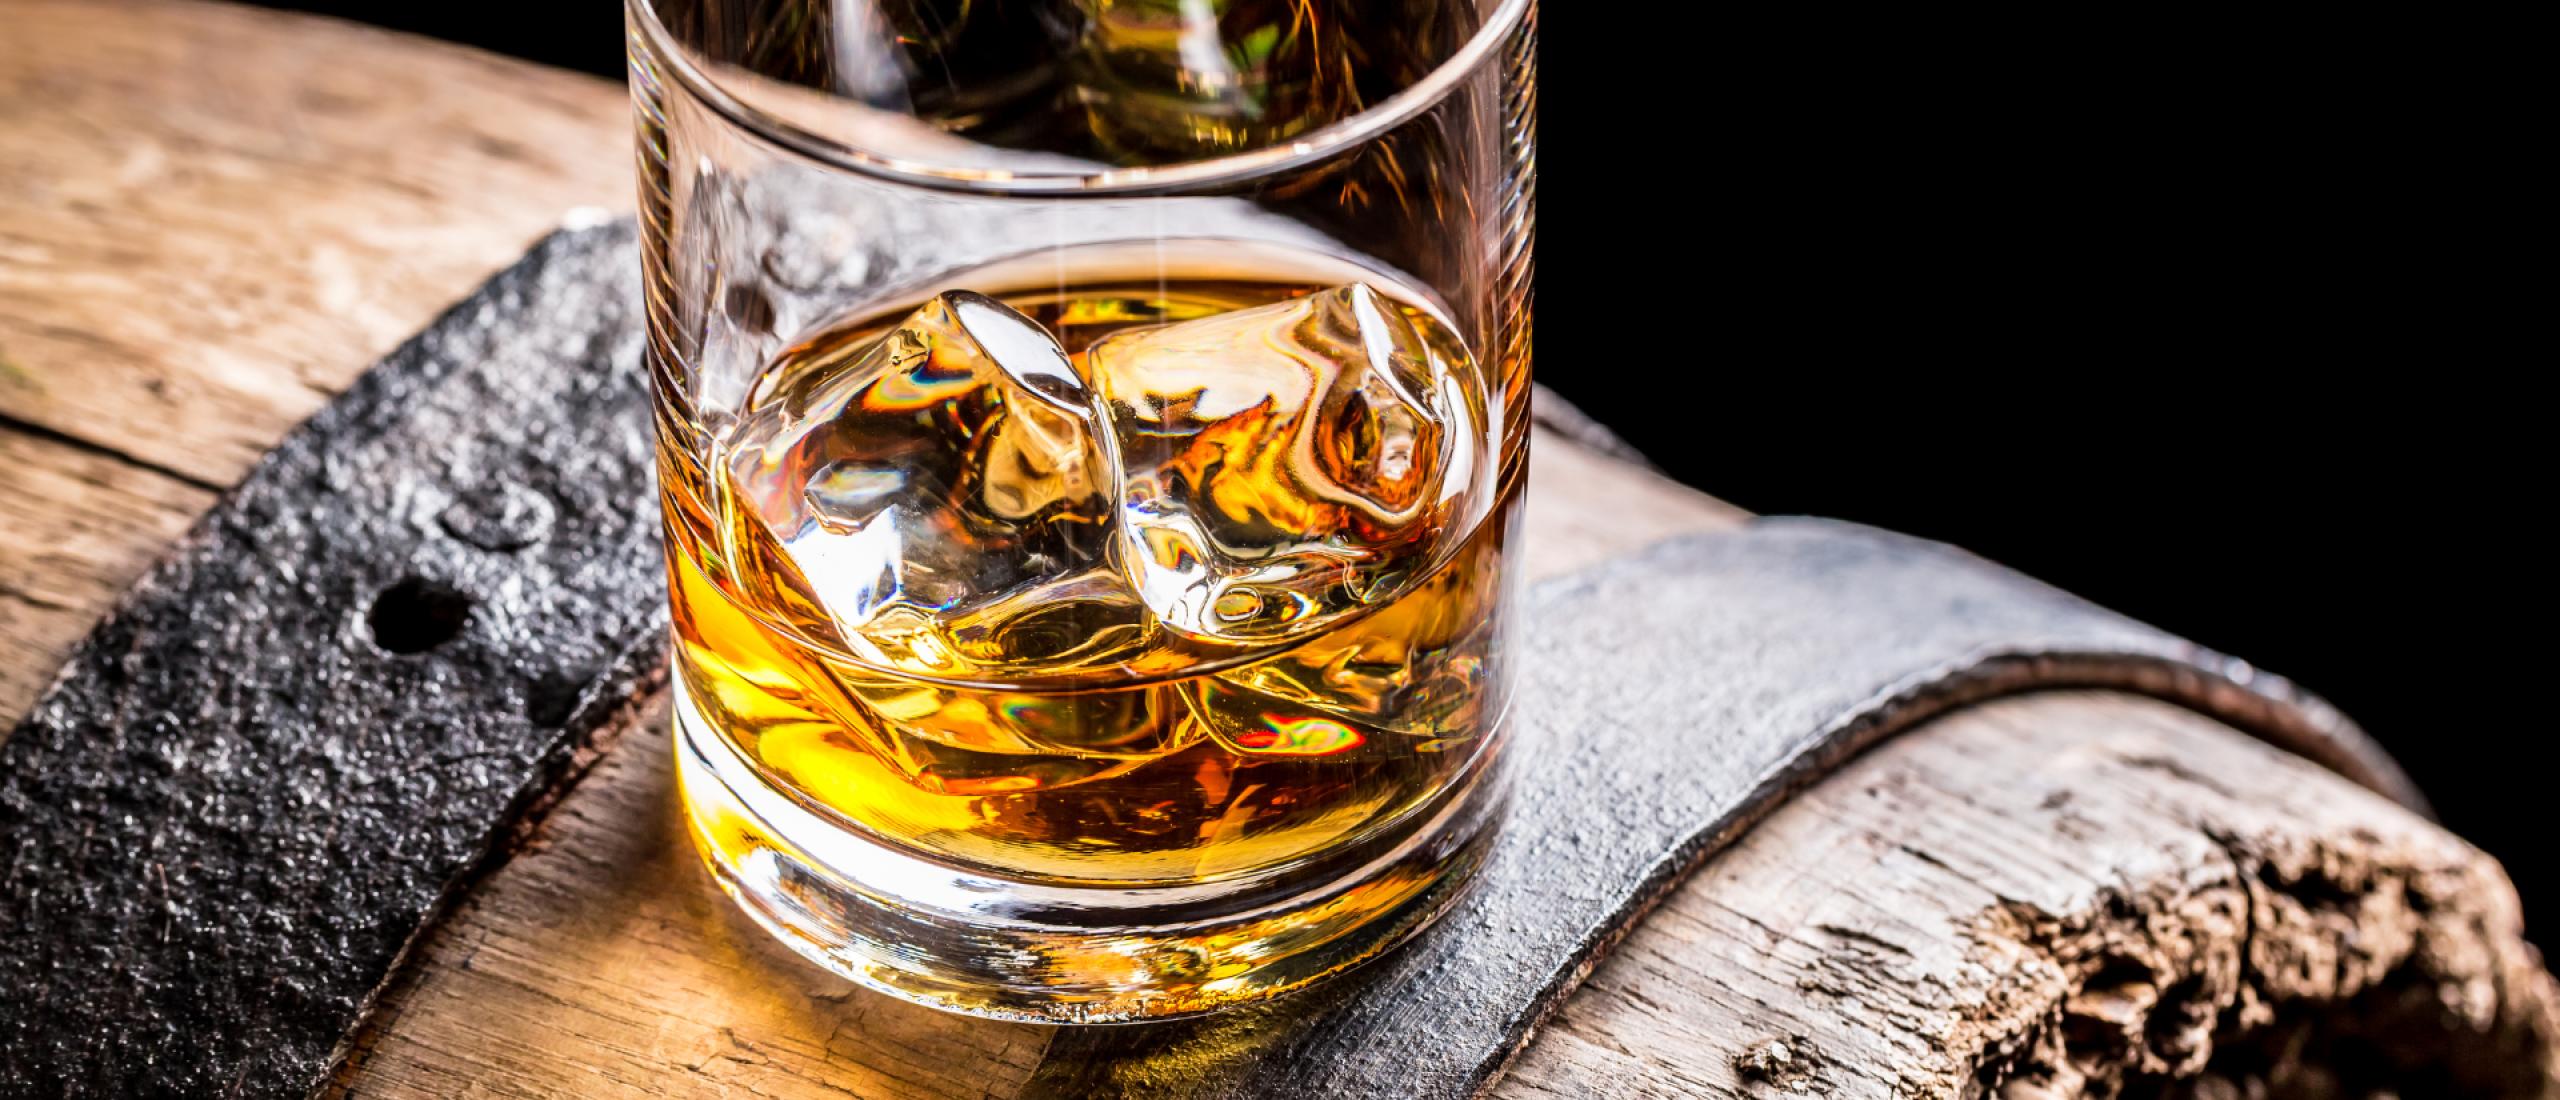 7x Beste Whisky proeverij Brabant en Gelderland